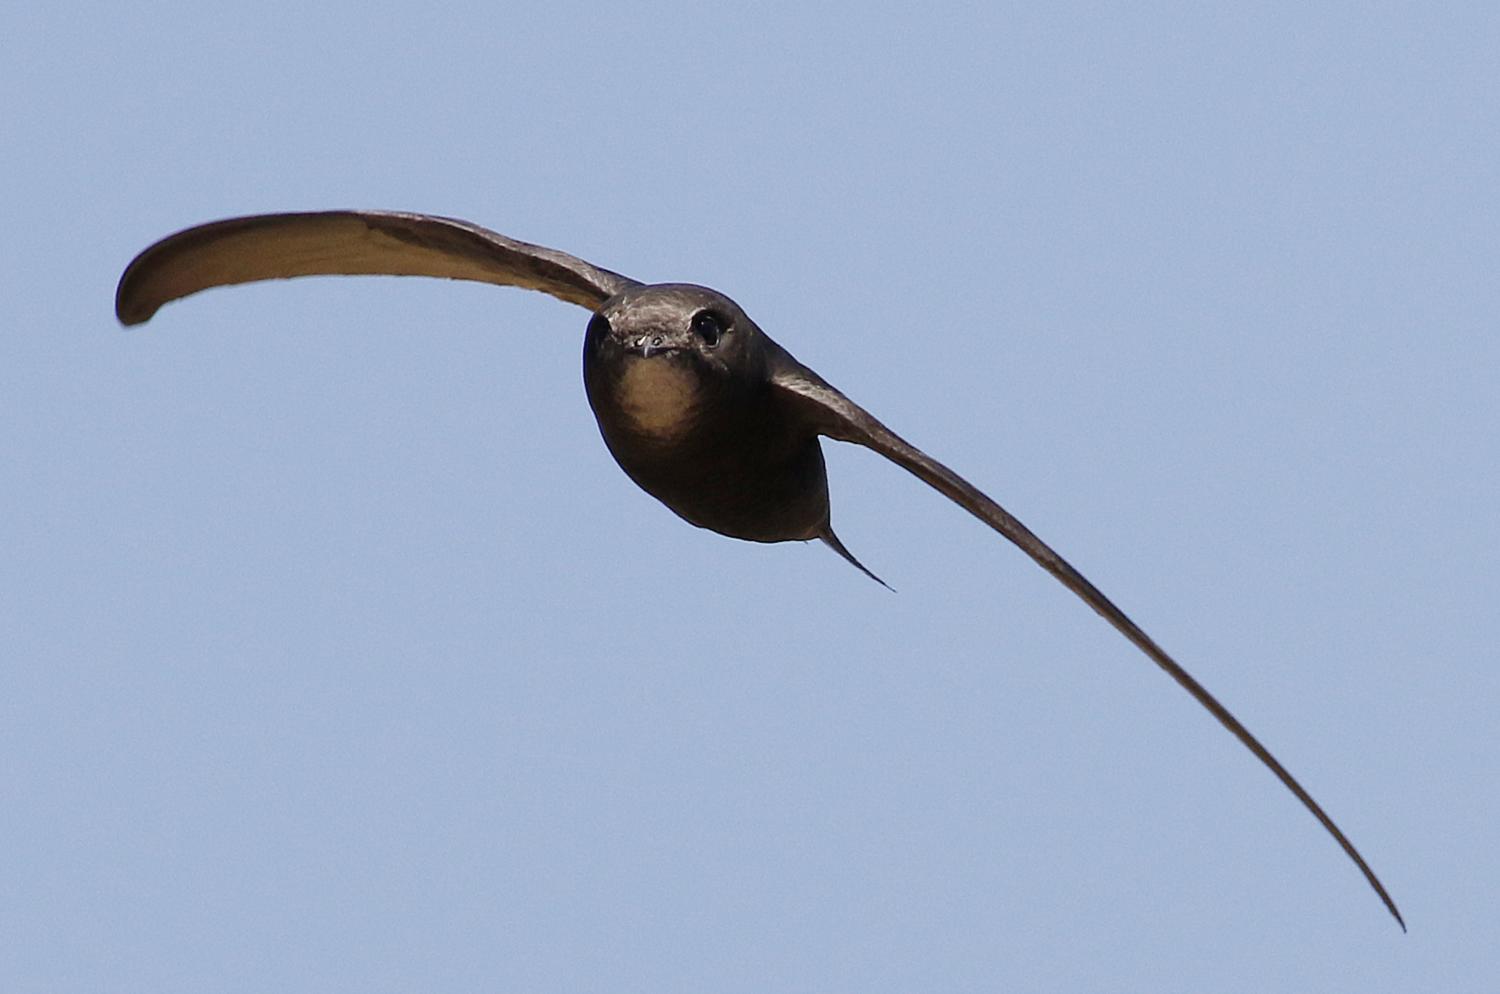 Brzo, fotografije ptica u letu